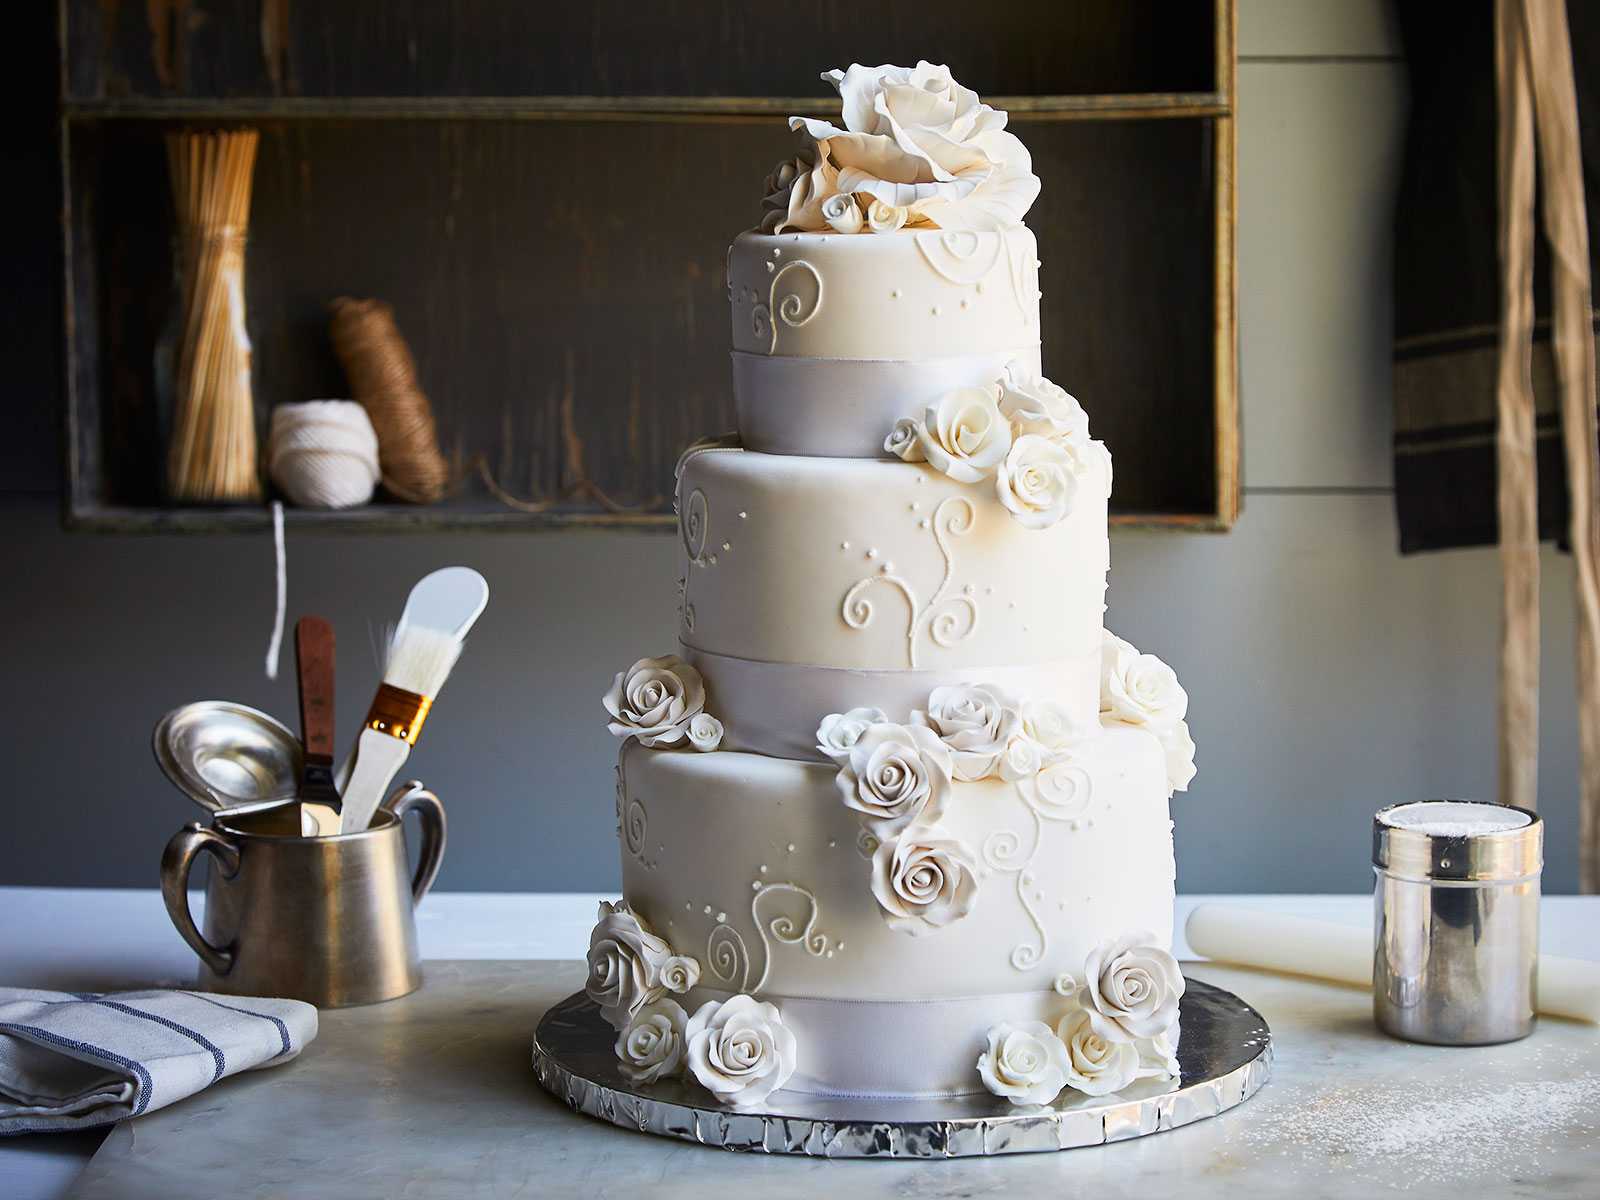 Cake home иркутск свадебные торты